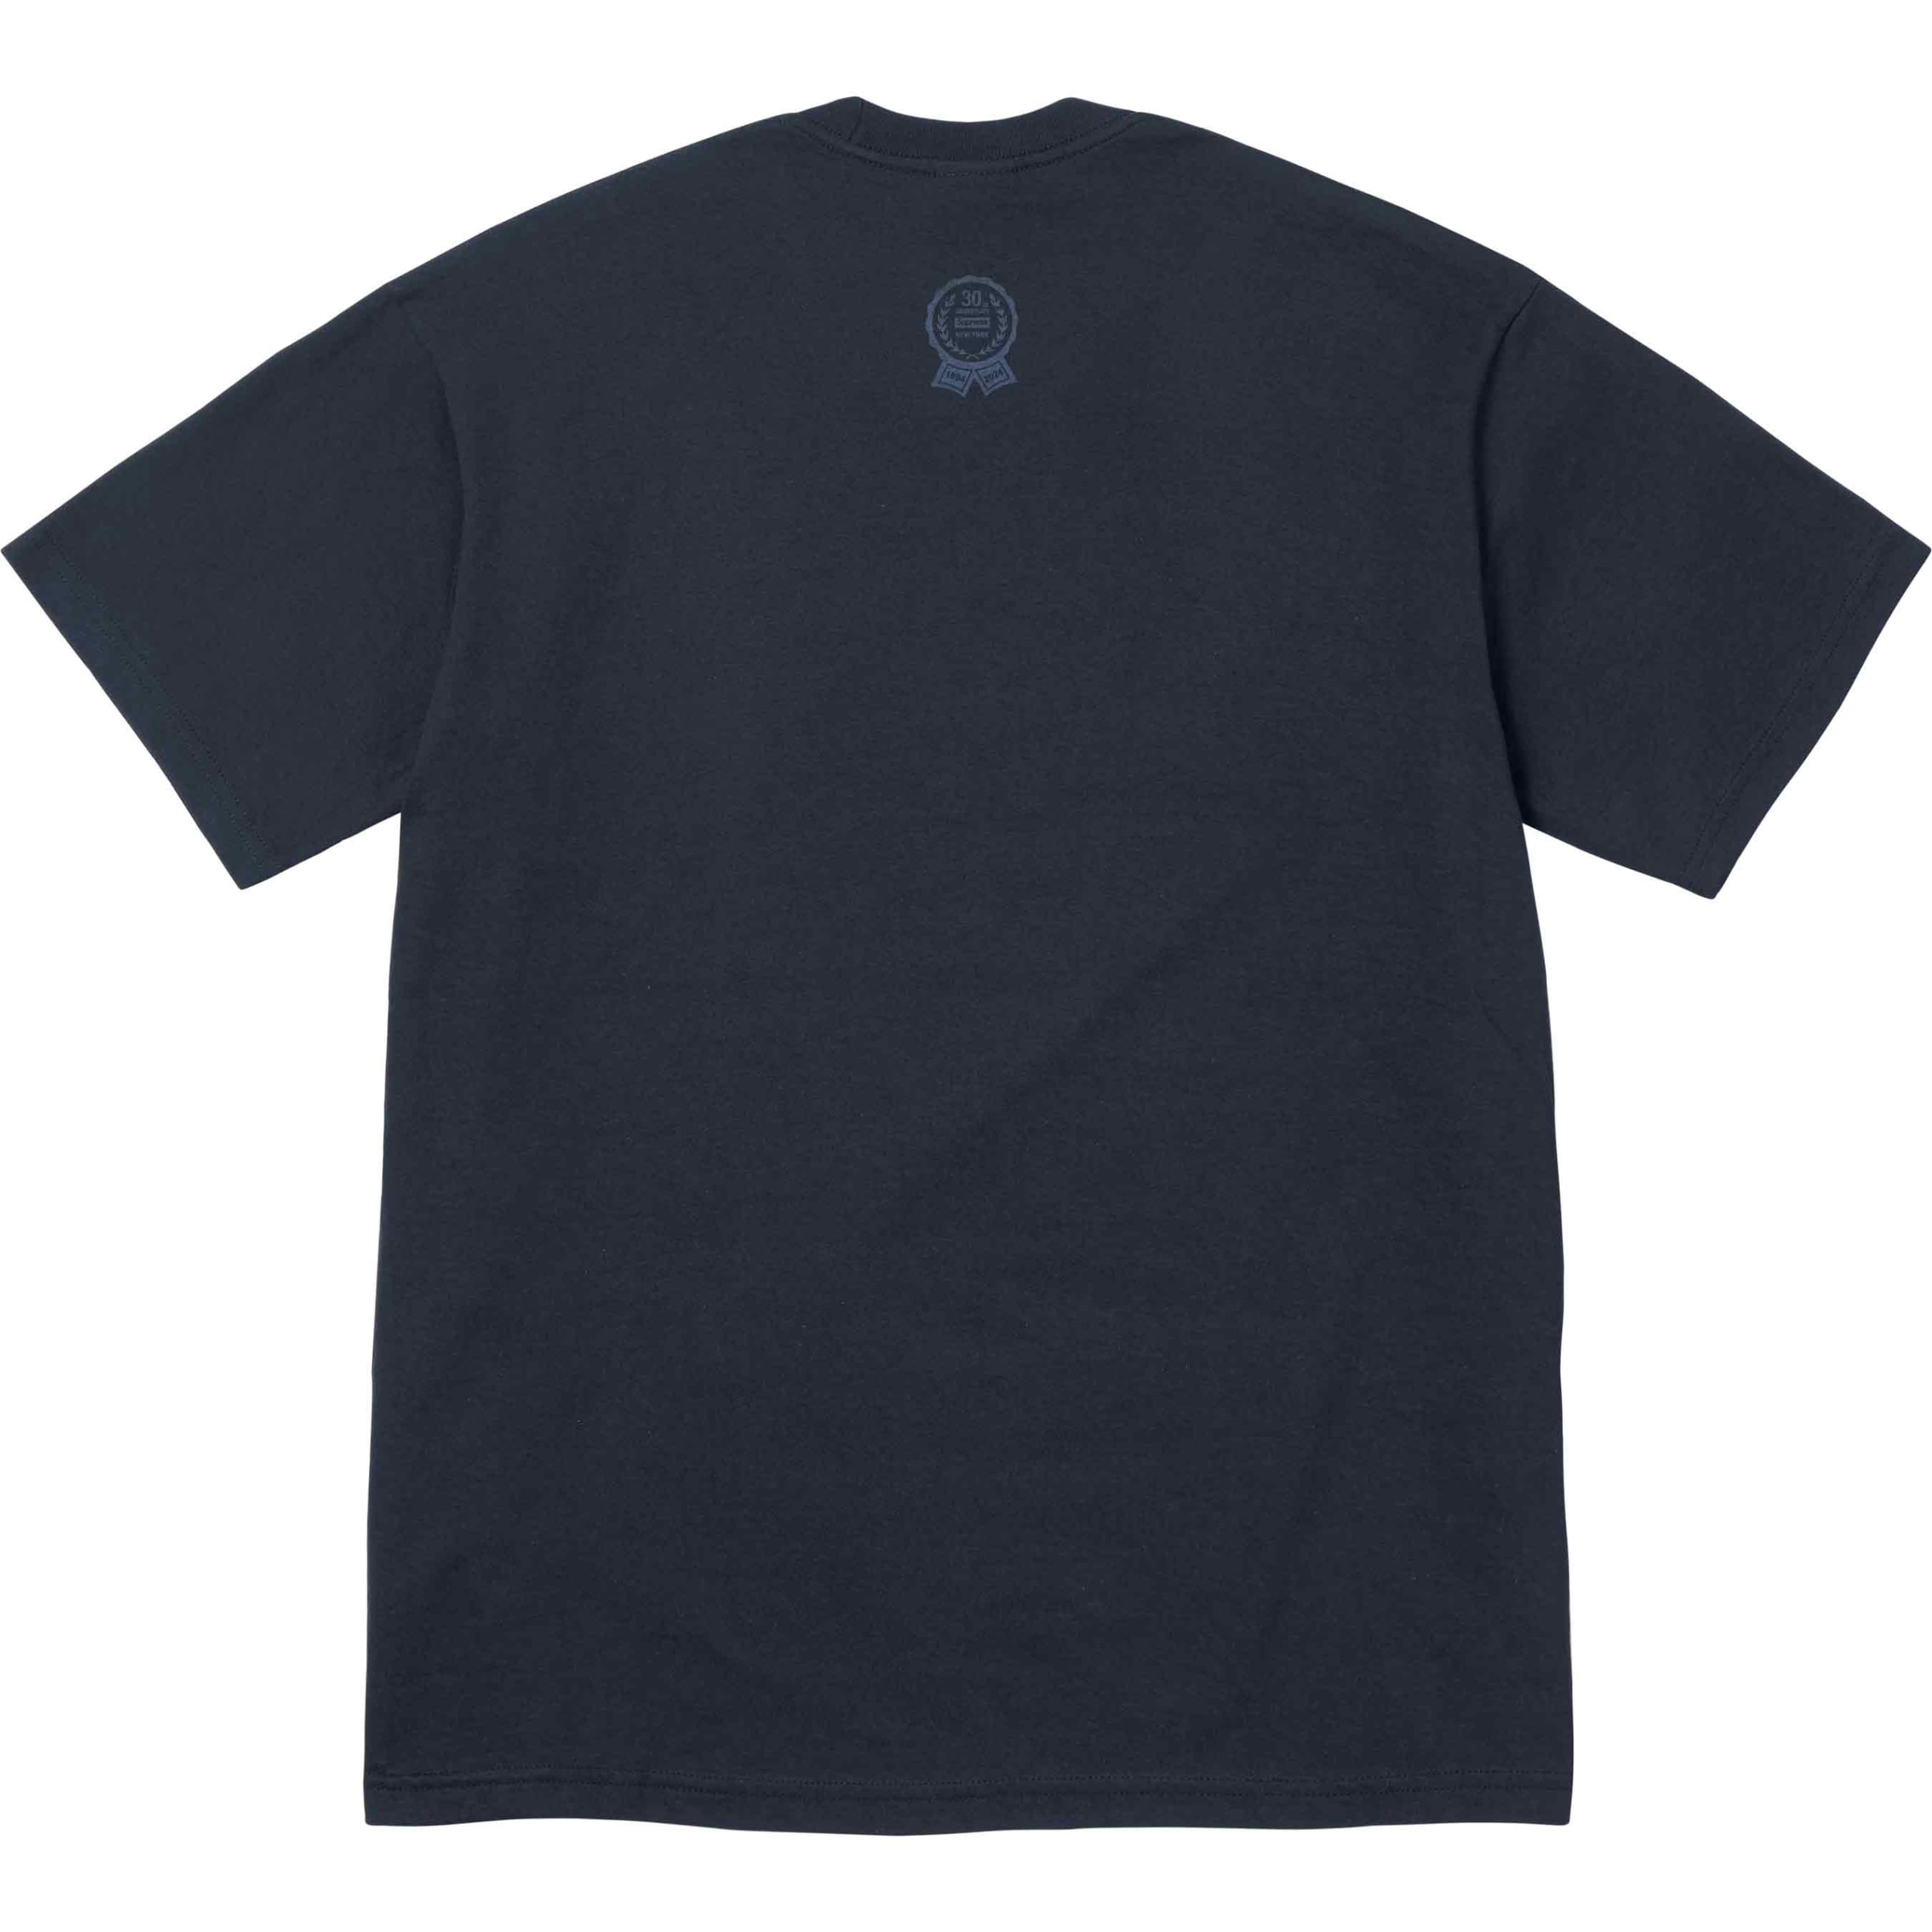 持续庆祝成立 30 周年，Supreme 释出「First T-Shirt」